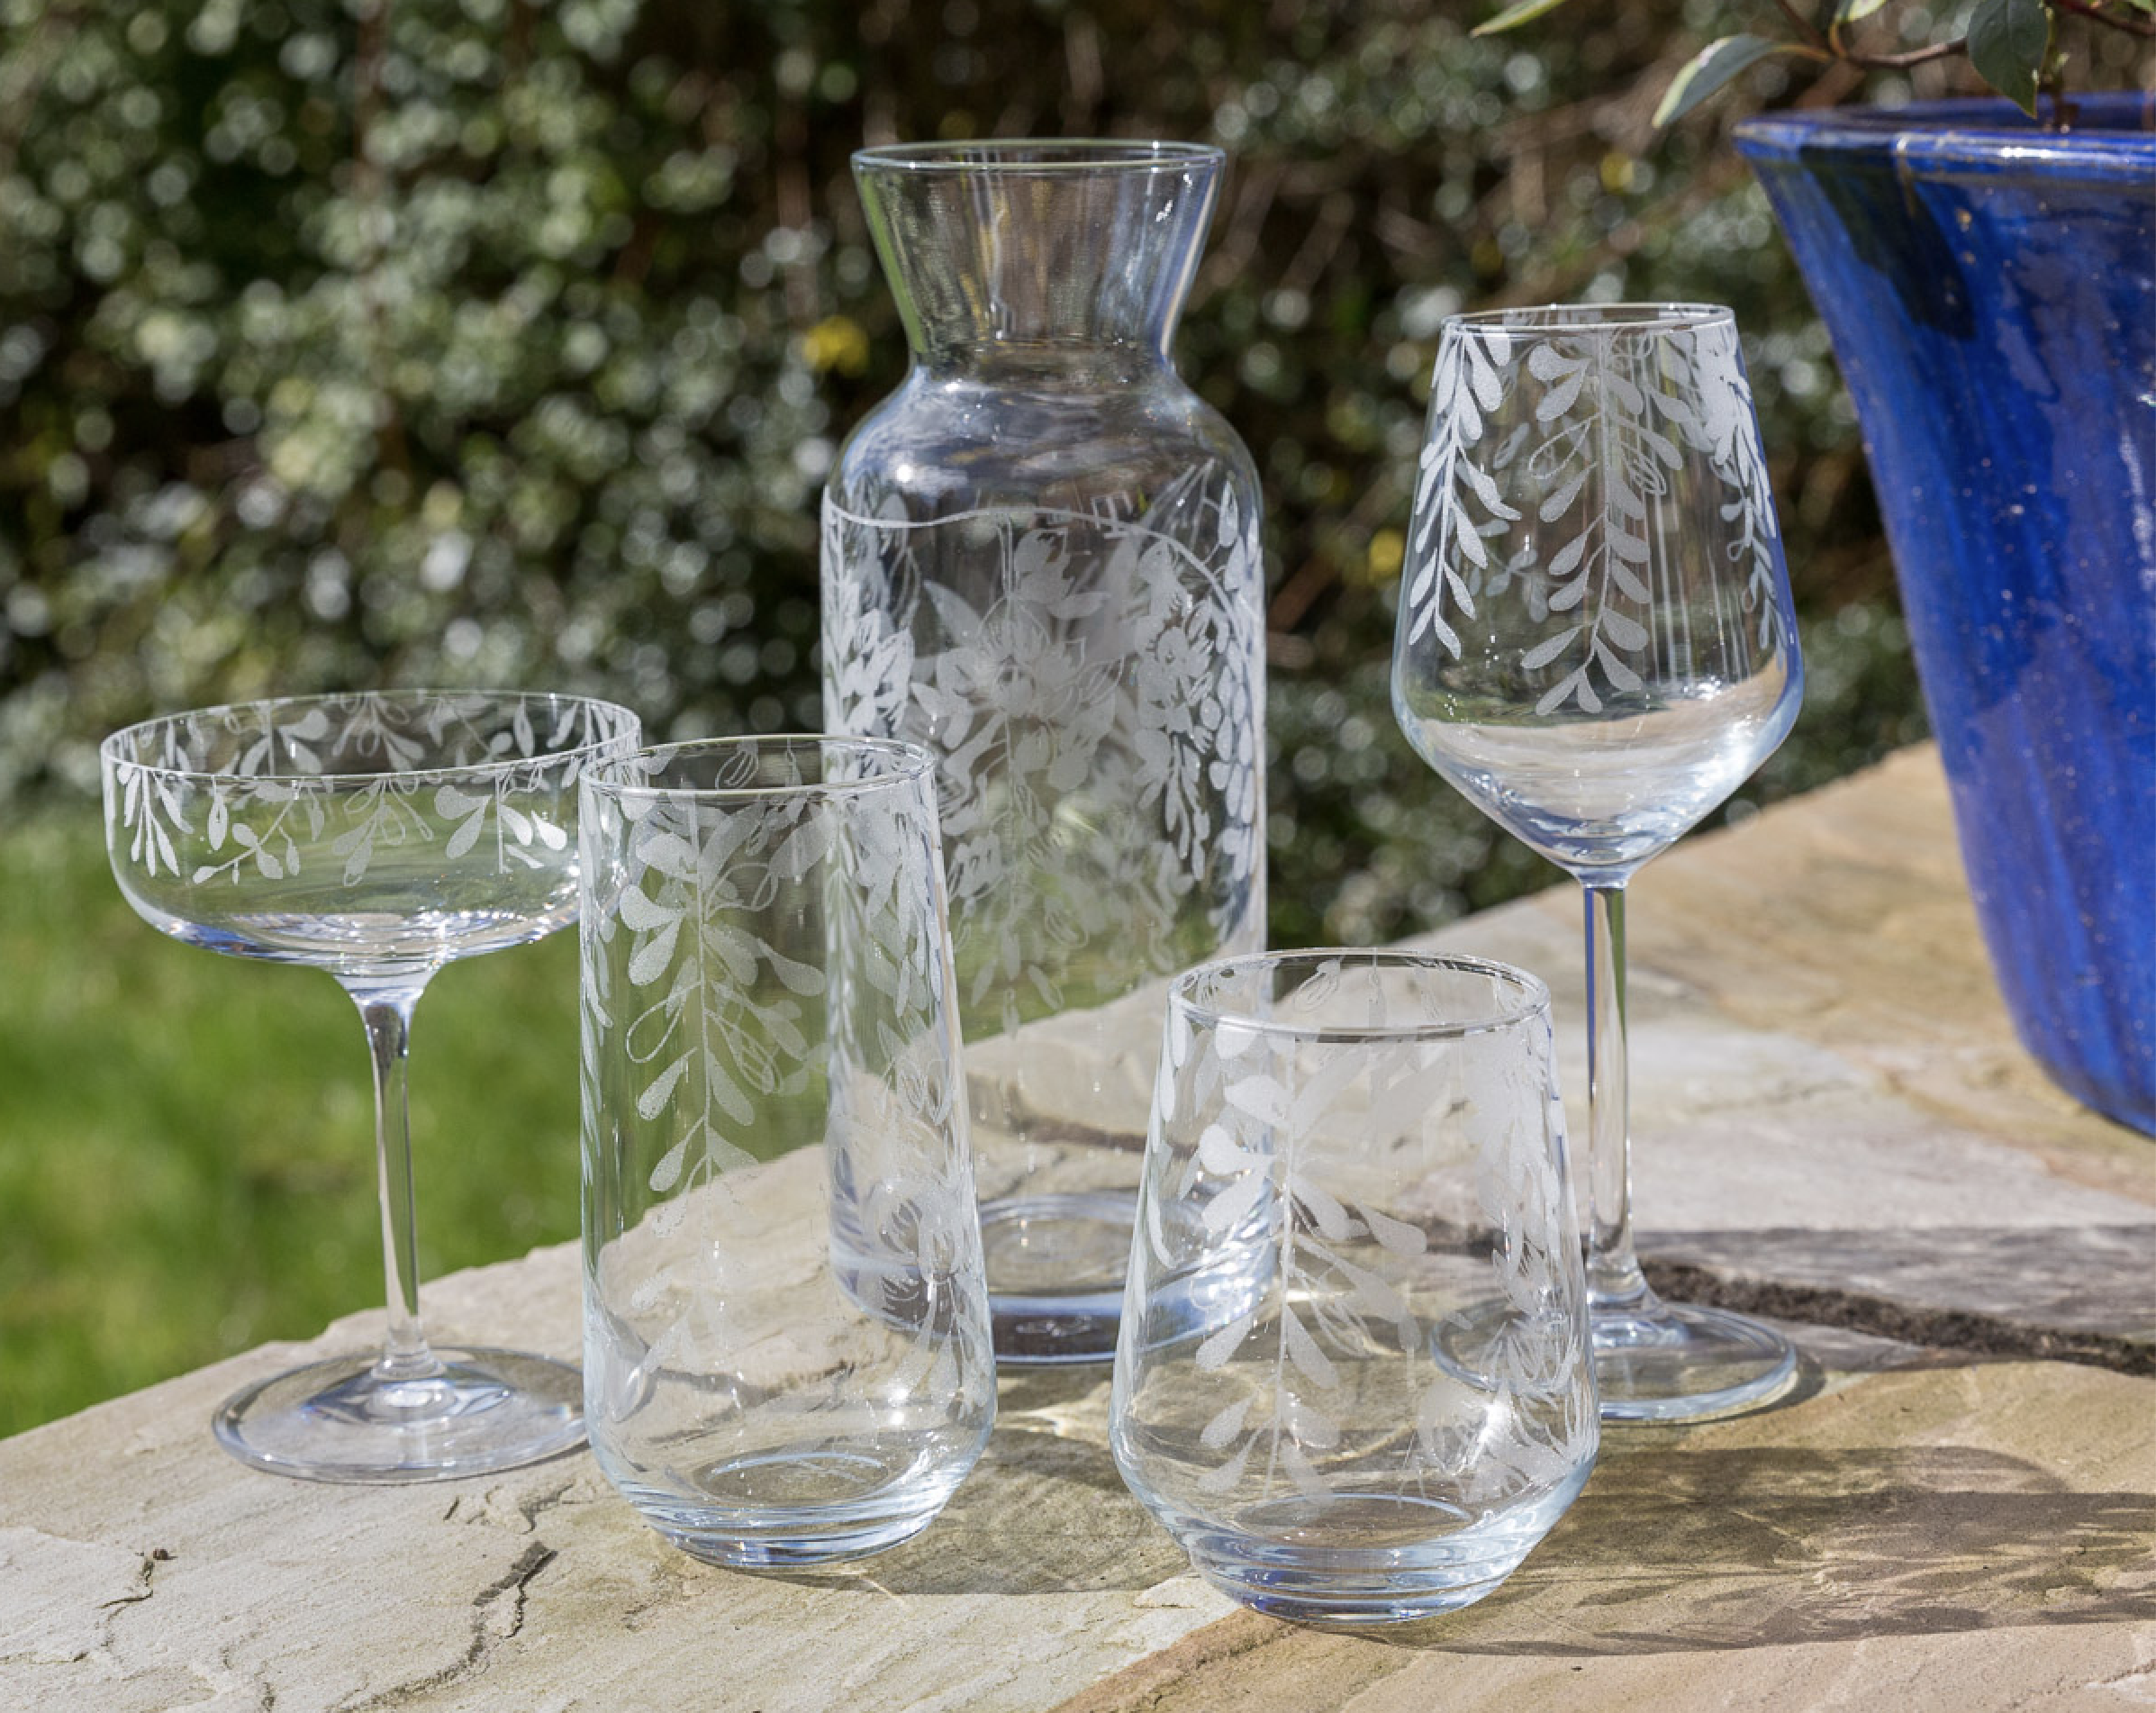 Emma Britton - RHS Wisteria Glassware Collection